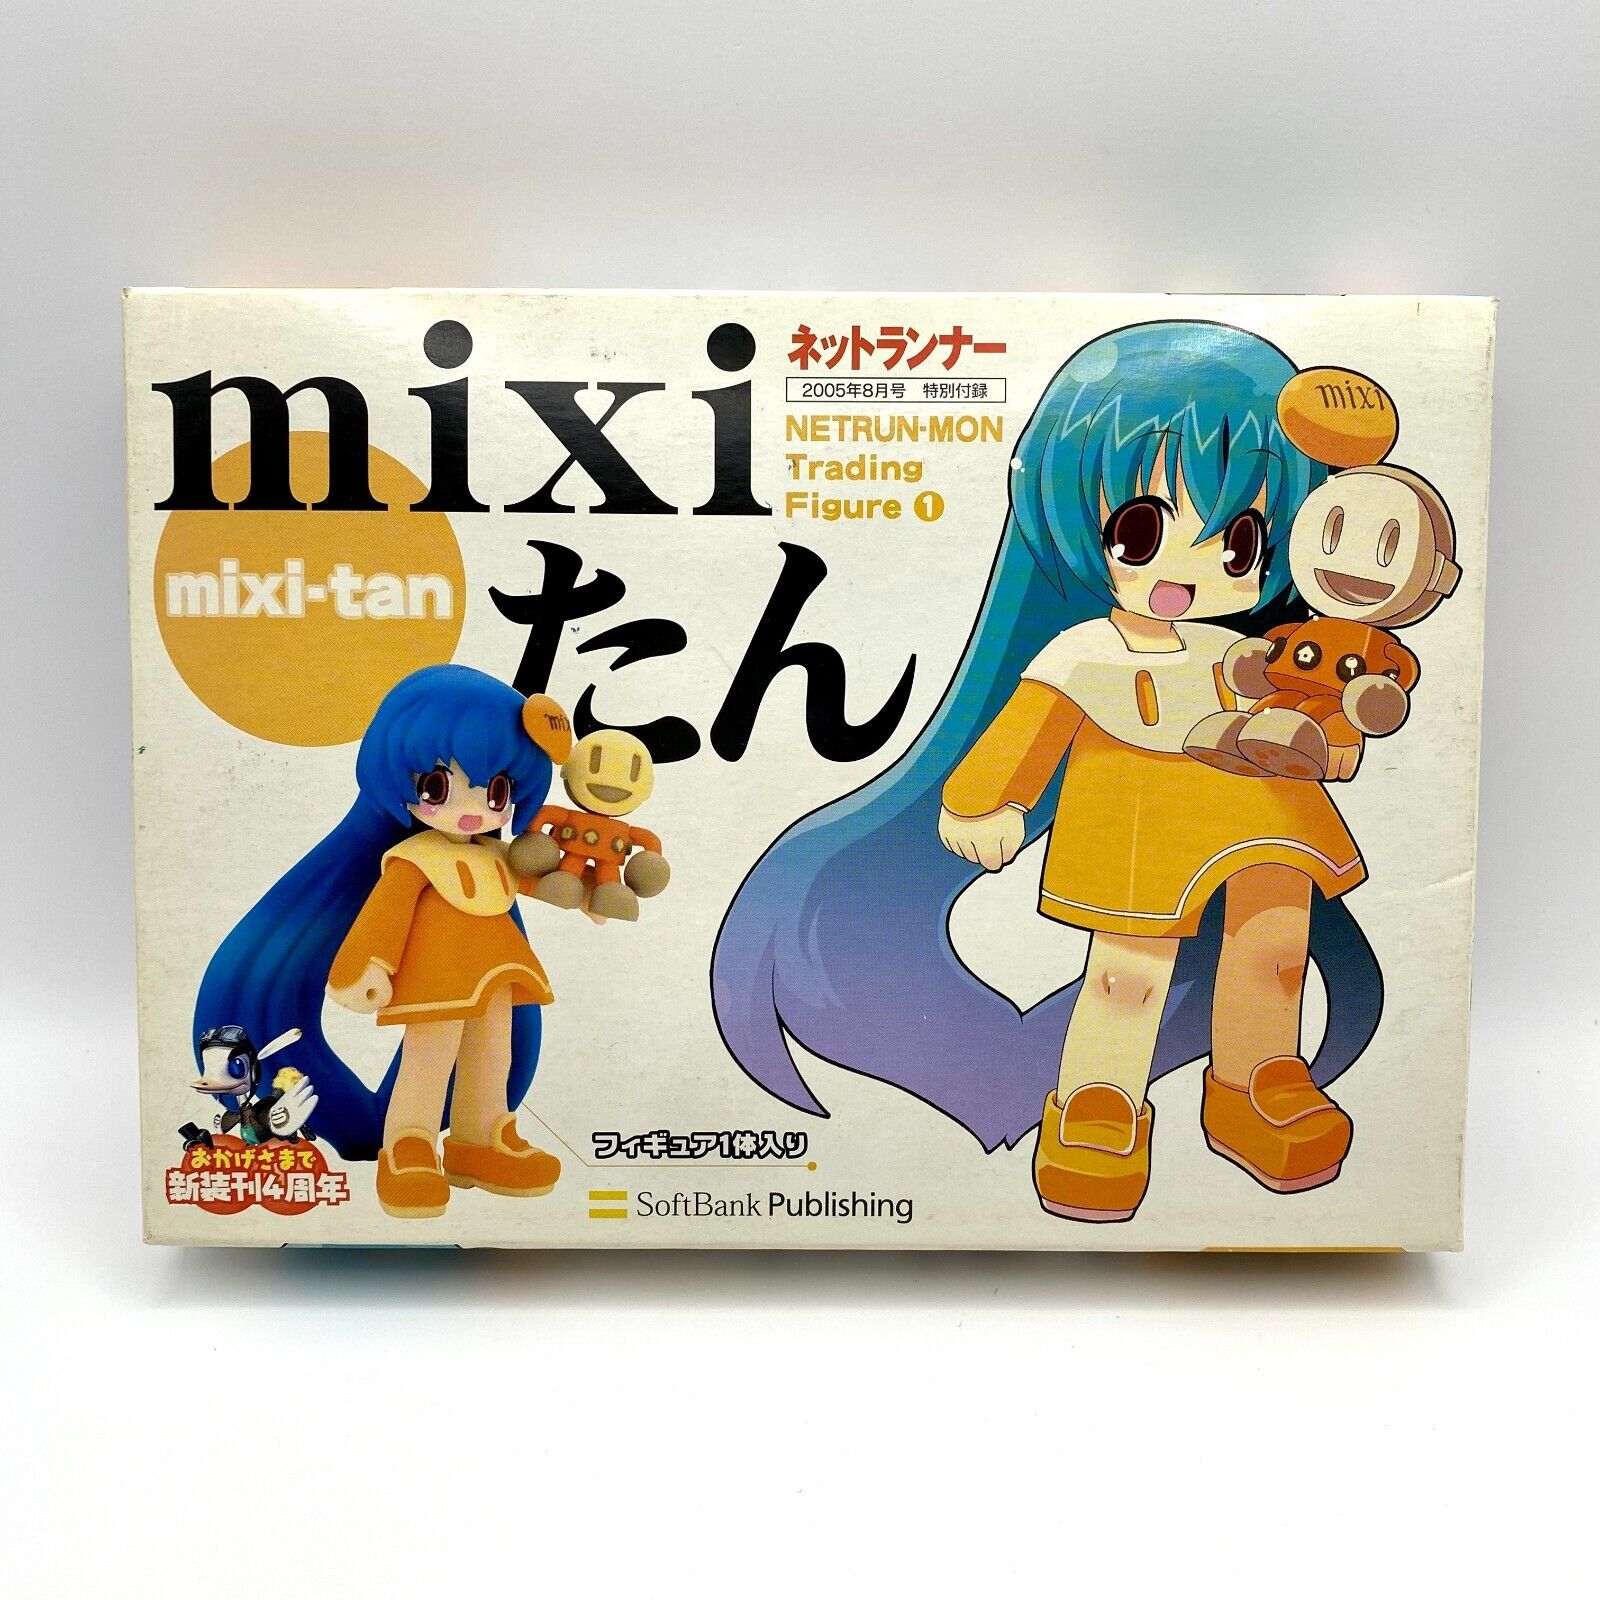 MIXI-TAN Netrun-Mon Trading Figure Collection Netrunner SoftBank 2005